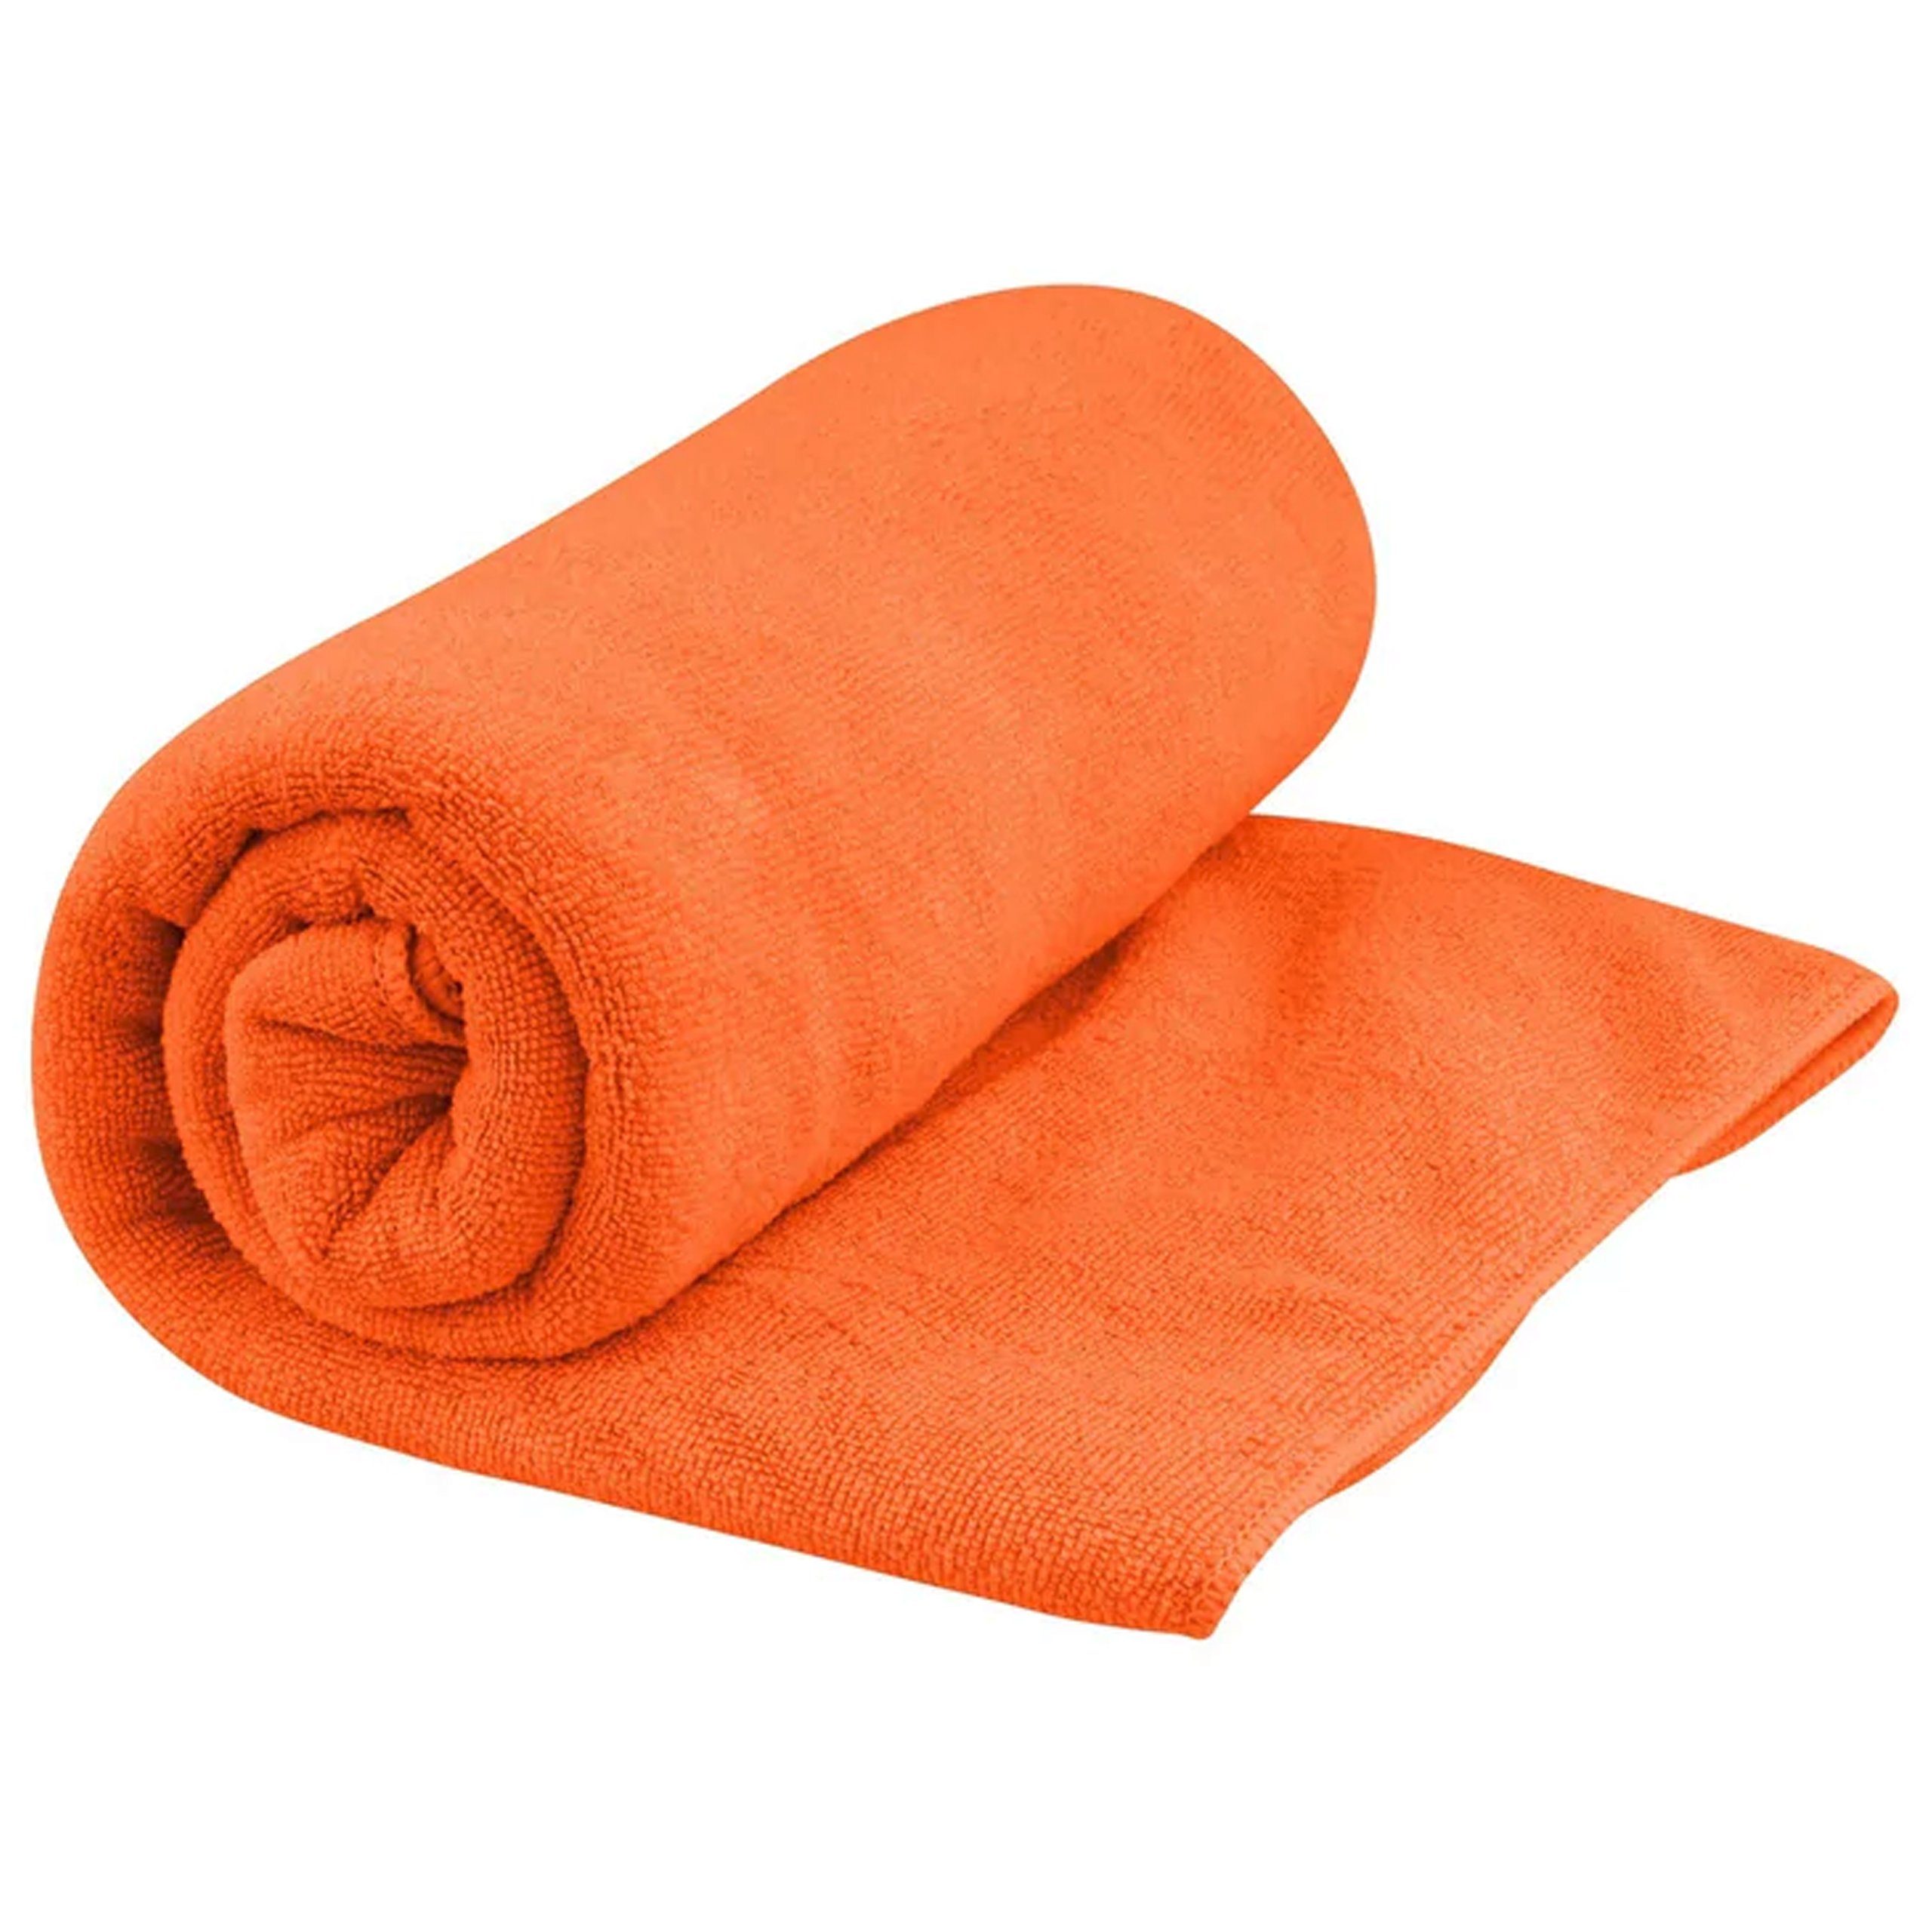 sea to Sea orange Tek Summit Towel summit trocknendes Reisehandtuch/Outdoorhan schnell outback - Reisehandtuch to